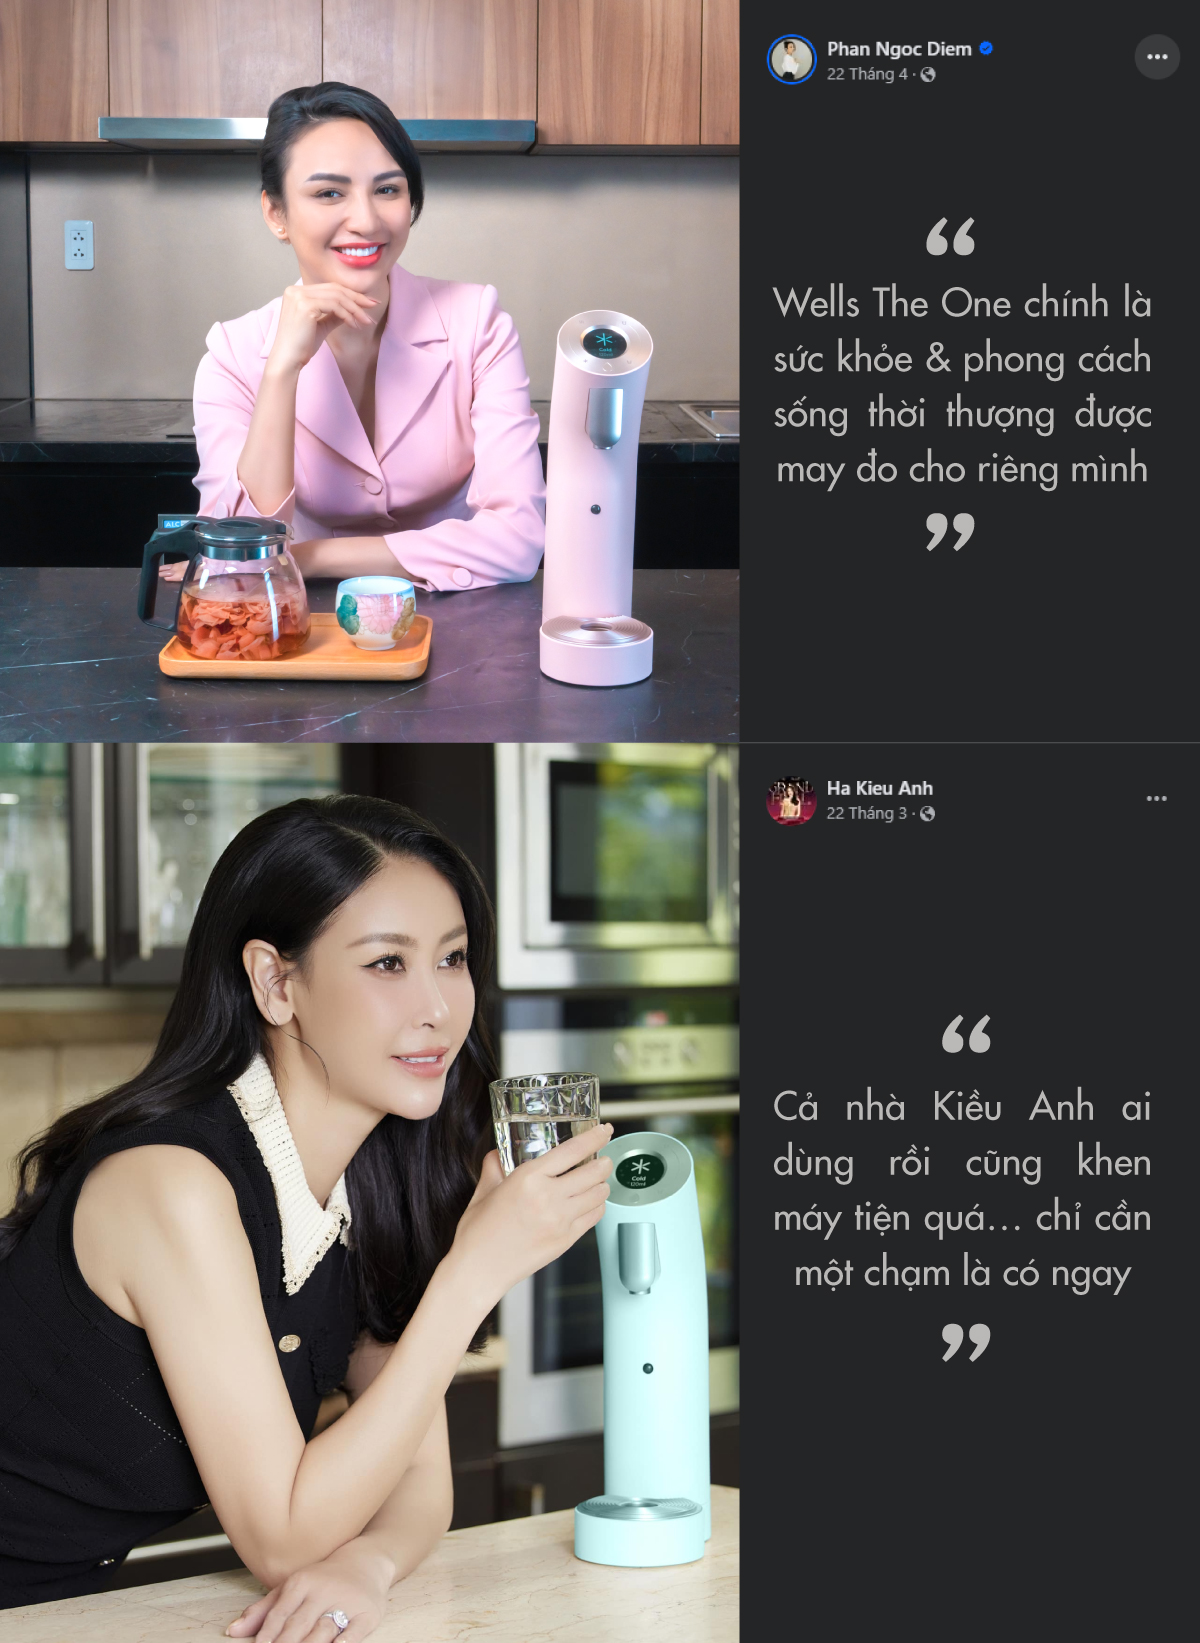 Rất nhiều sao Việt đã chia sẻ niềm yêu thích với Wells The One trên mạng xã hội